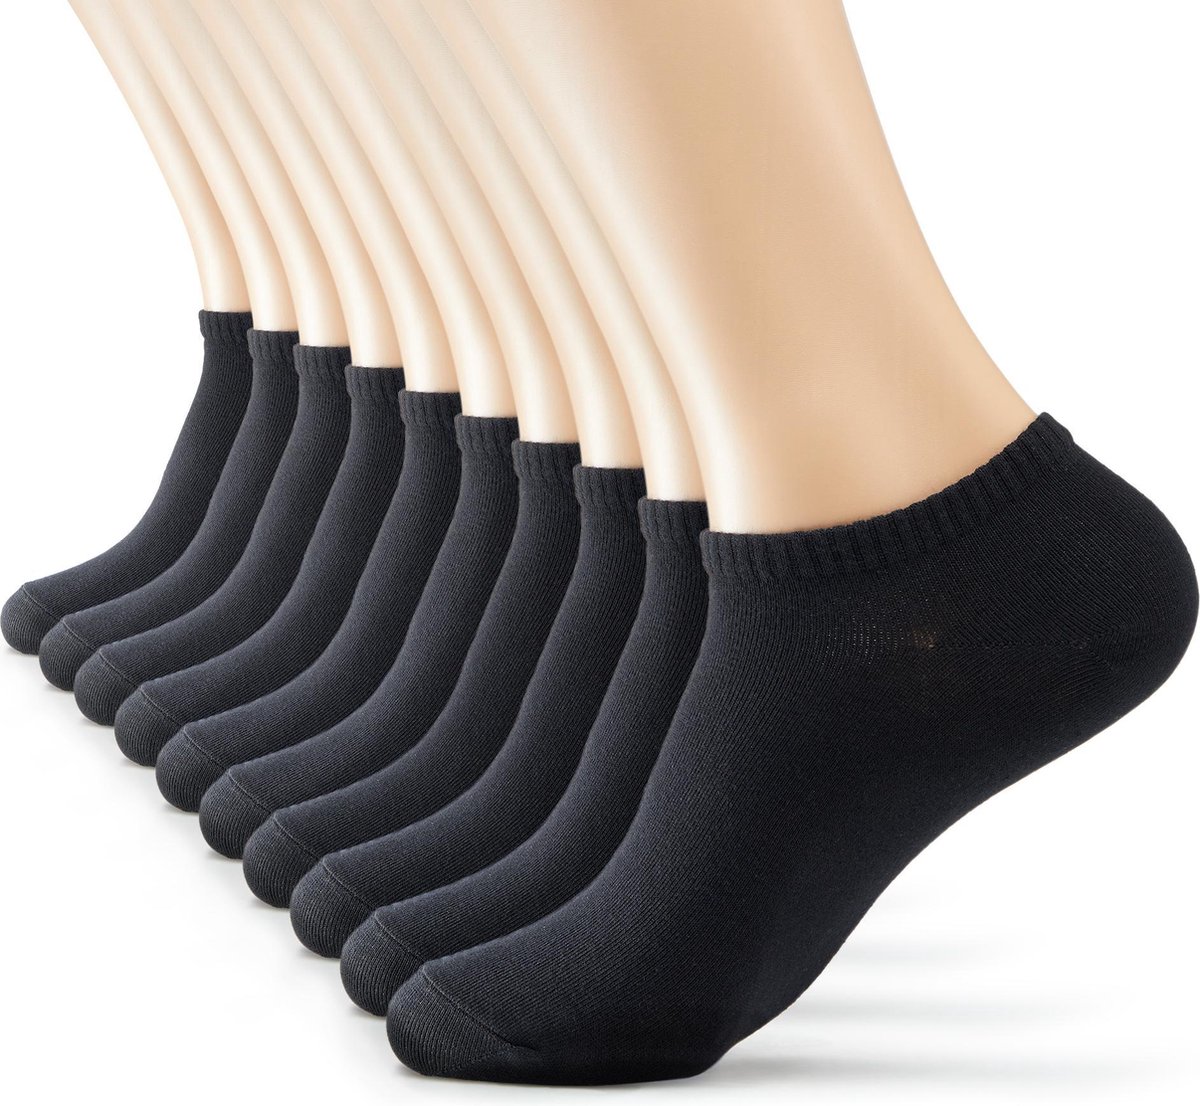 Zwarte Lage Enkel Sokken - Heren, Dames, Unisex - 10 Paar - Zwart - Elastisch en Ademend - Monfoot